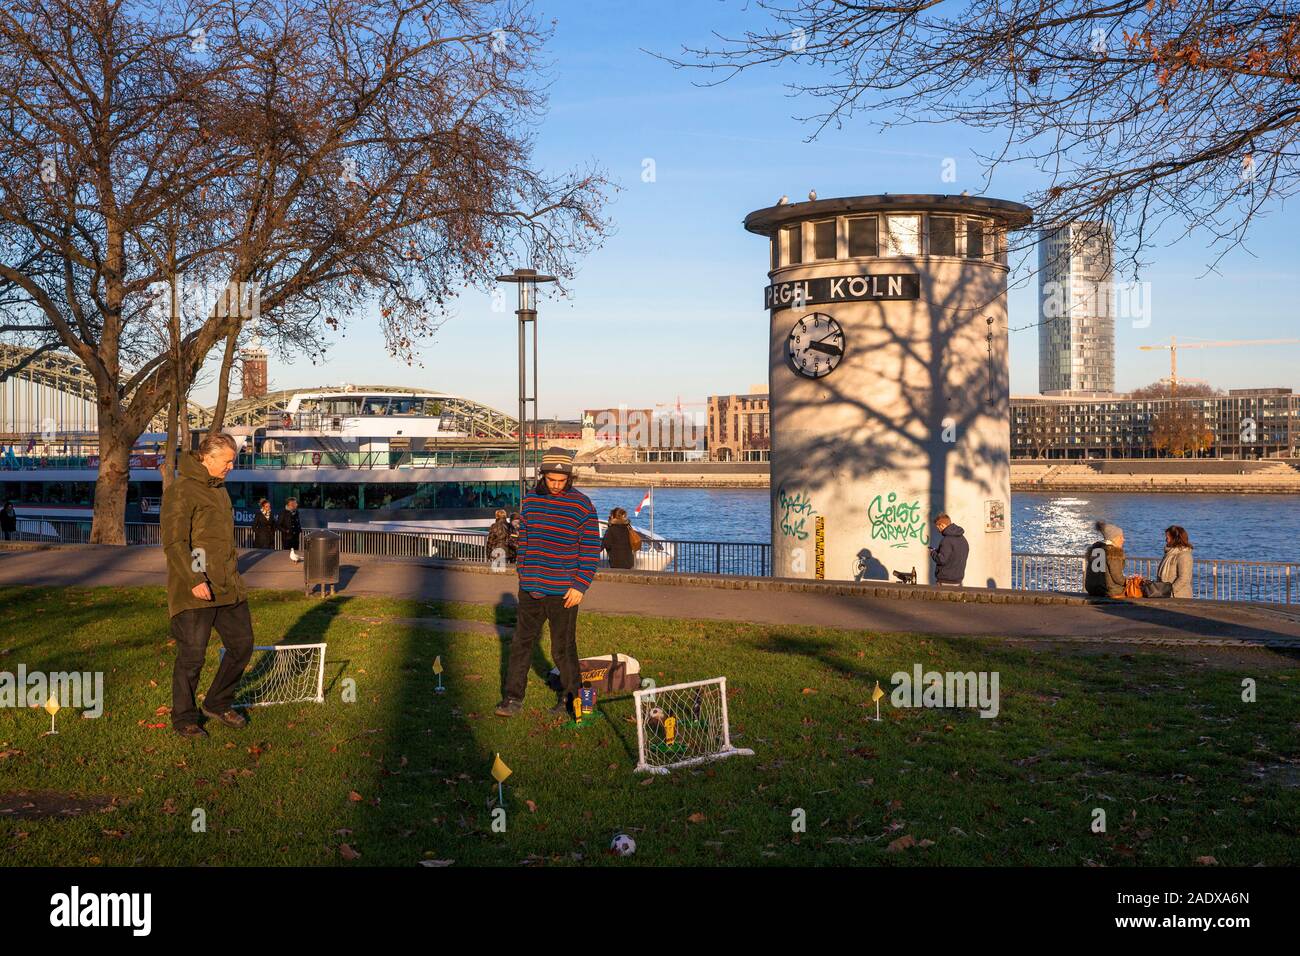 Le niveau d'eau réveil au bord du Rhin, vue de la tour Triangle dans le quartier de Deutz, Men playing football kicket, Cologne, Allemagne. Un Pegeluhr Banque D'Images